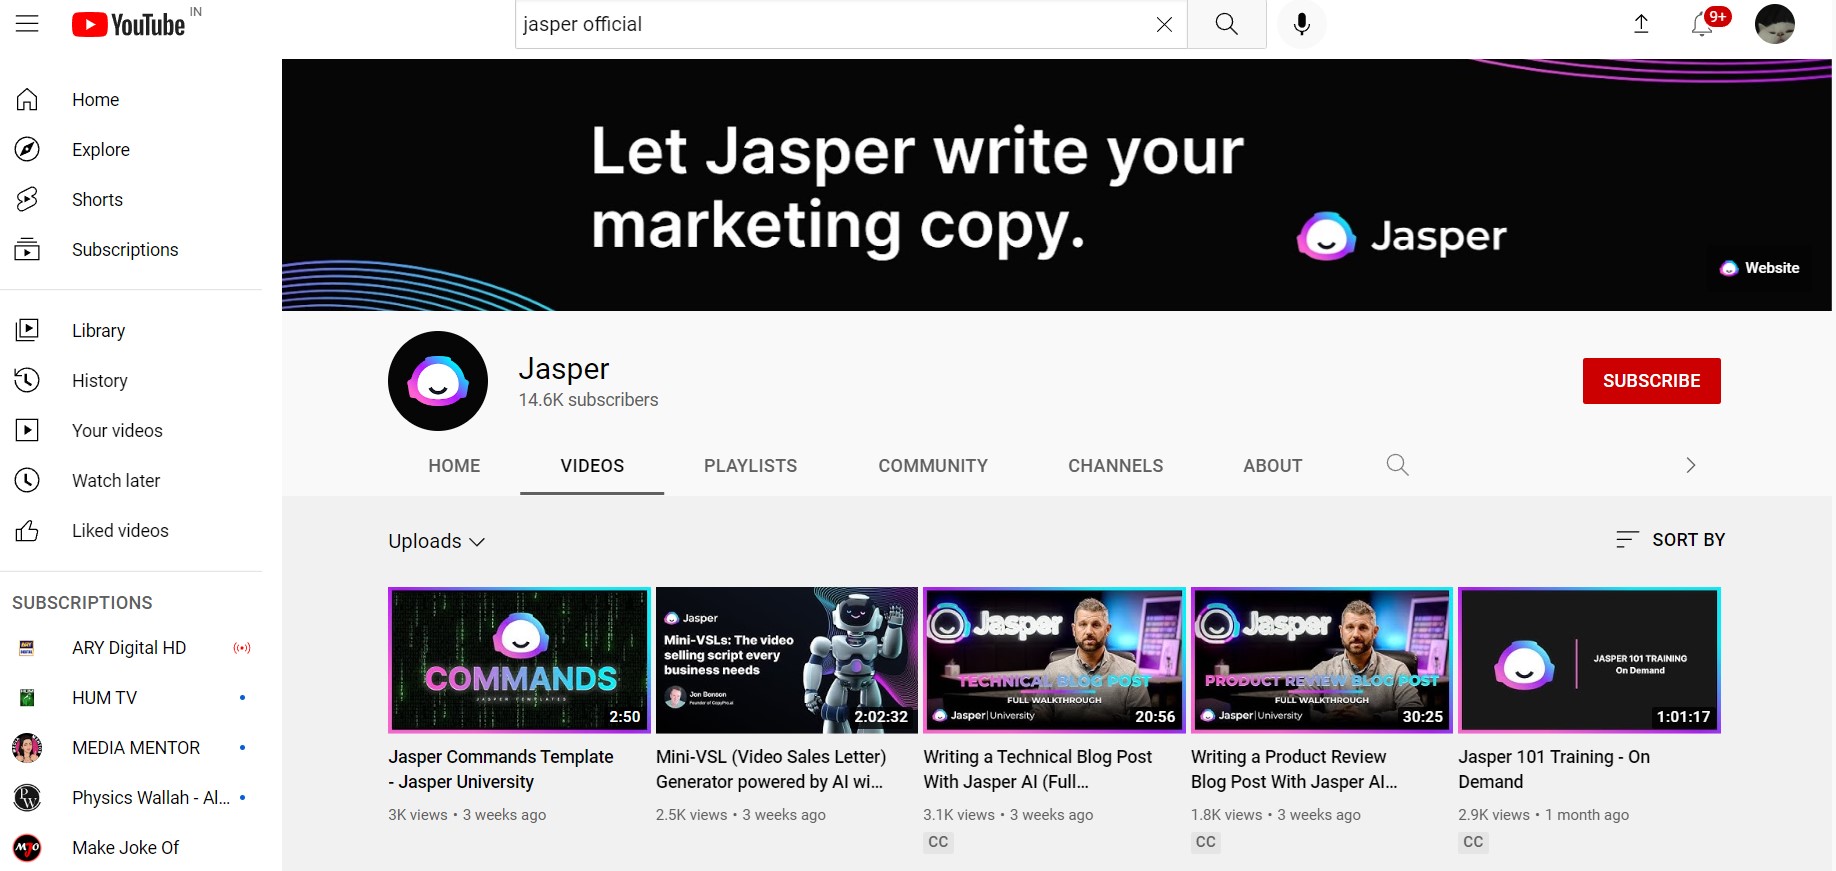 Jasper youtube community